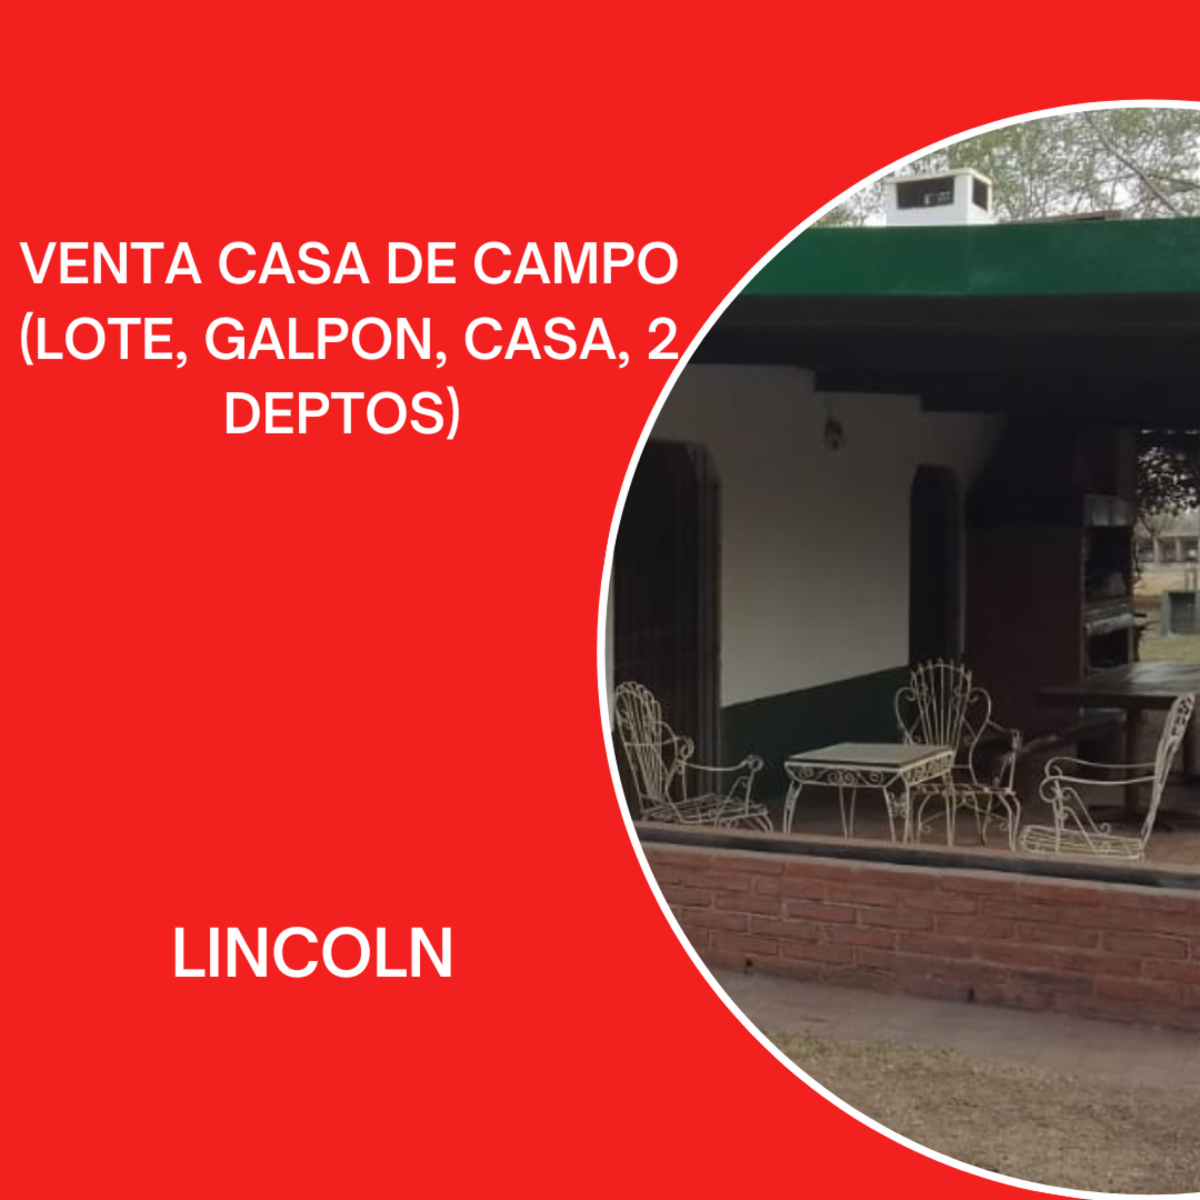 VENTA CASA DE CAMPO EN LINCOLN